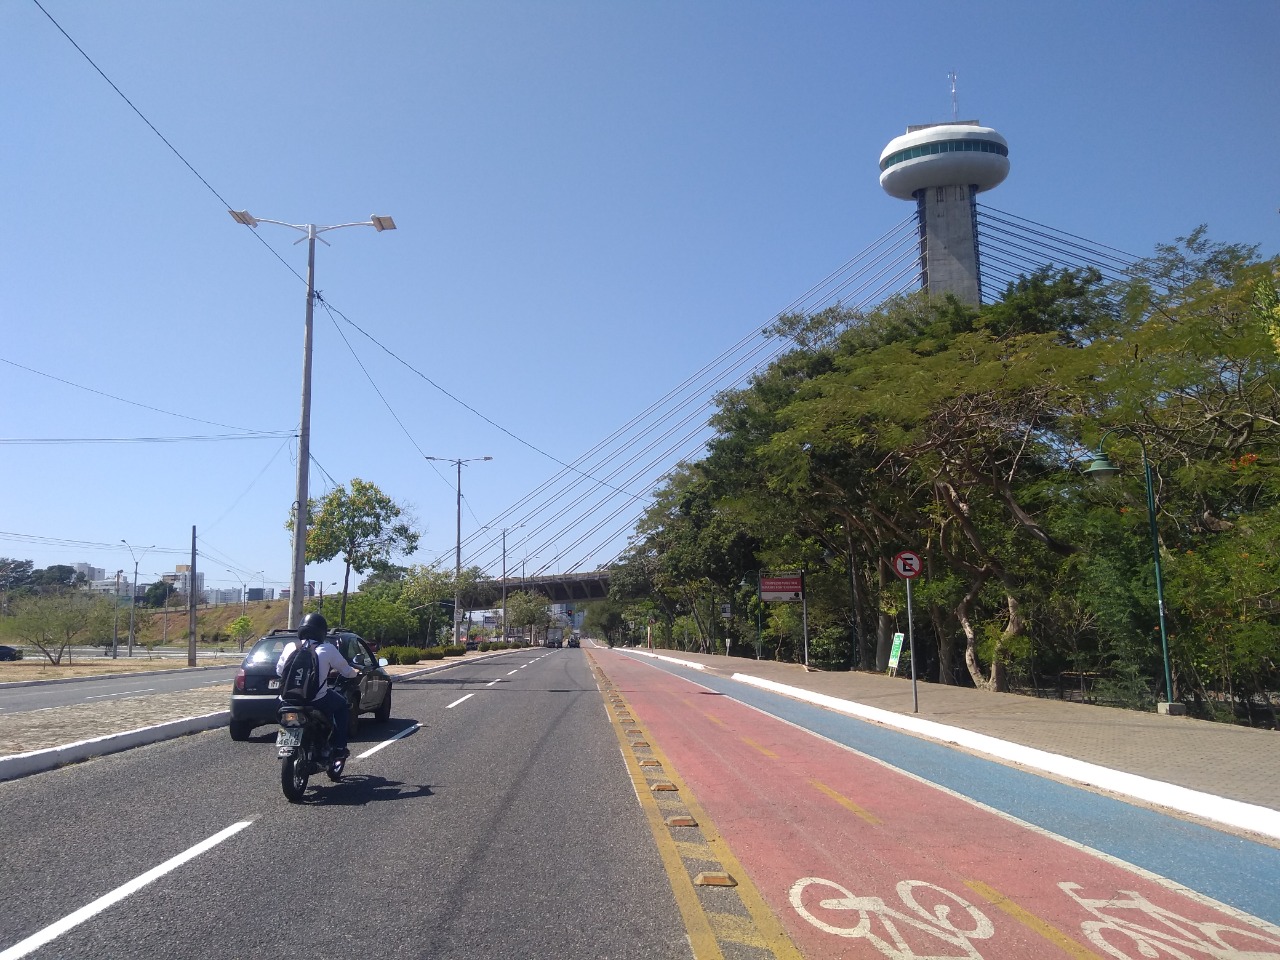 Motociclistas são os que mais sofreram acidentes em Teresina no último trimeste de 2019